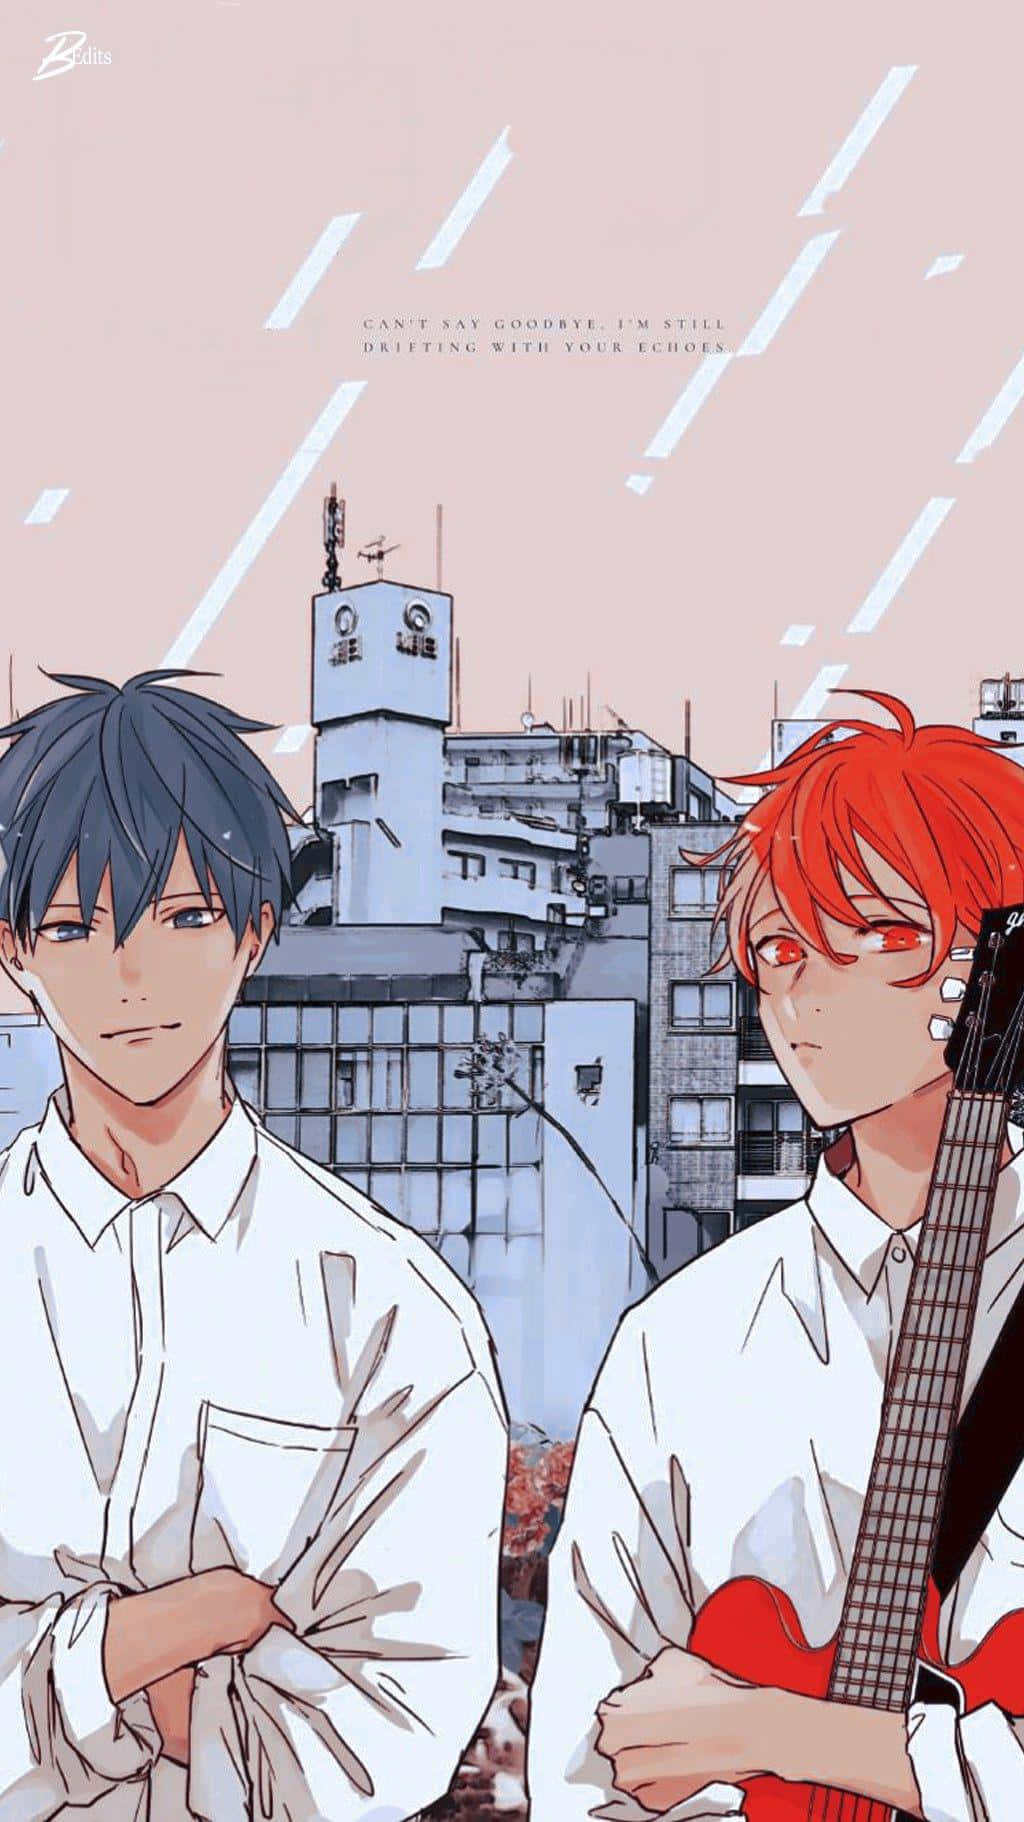 Animemafuyu Und Ritsuka Zusammen Dargestellt Wallpaper